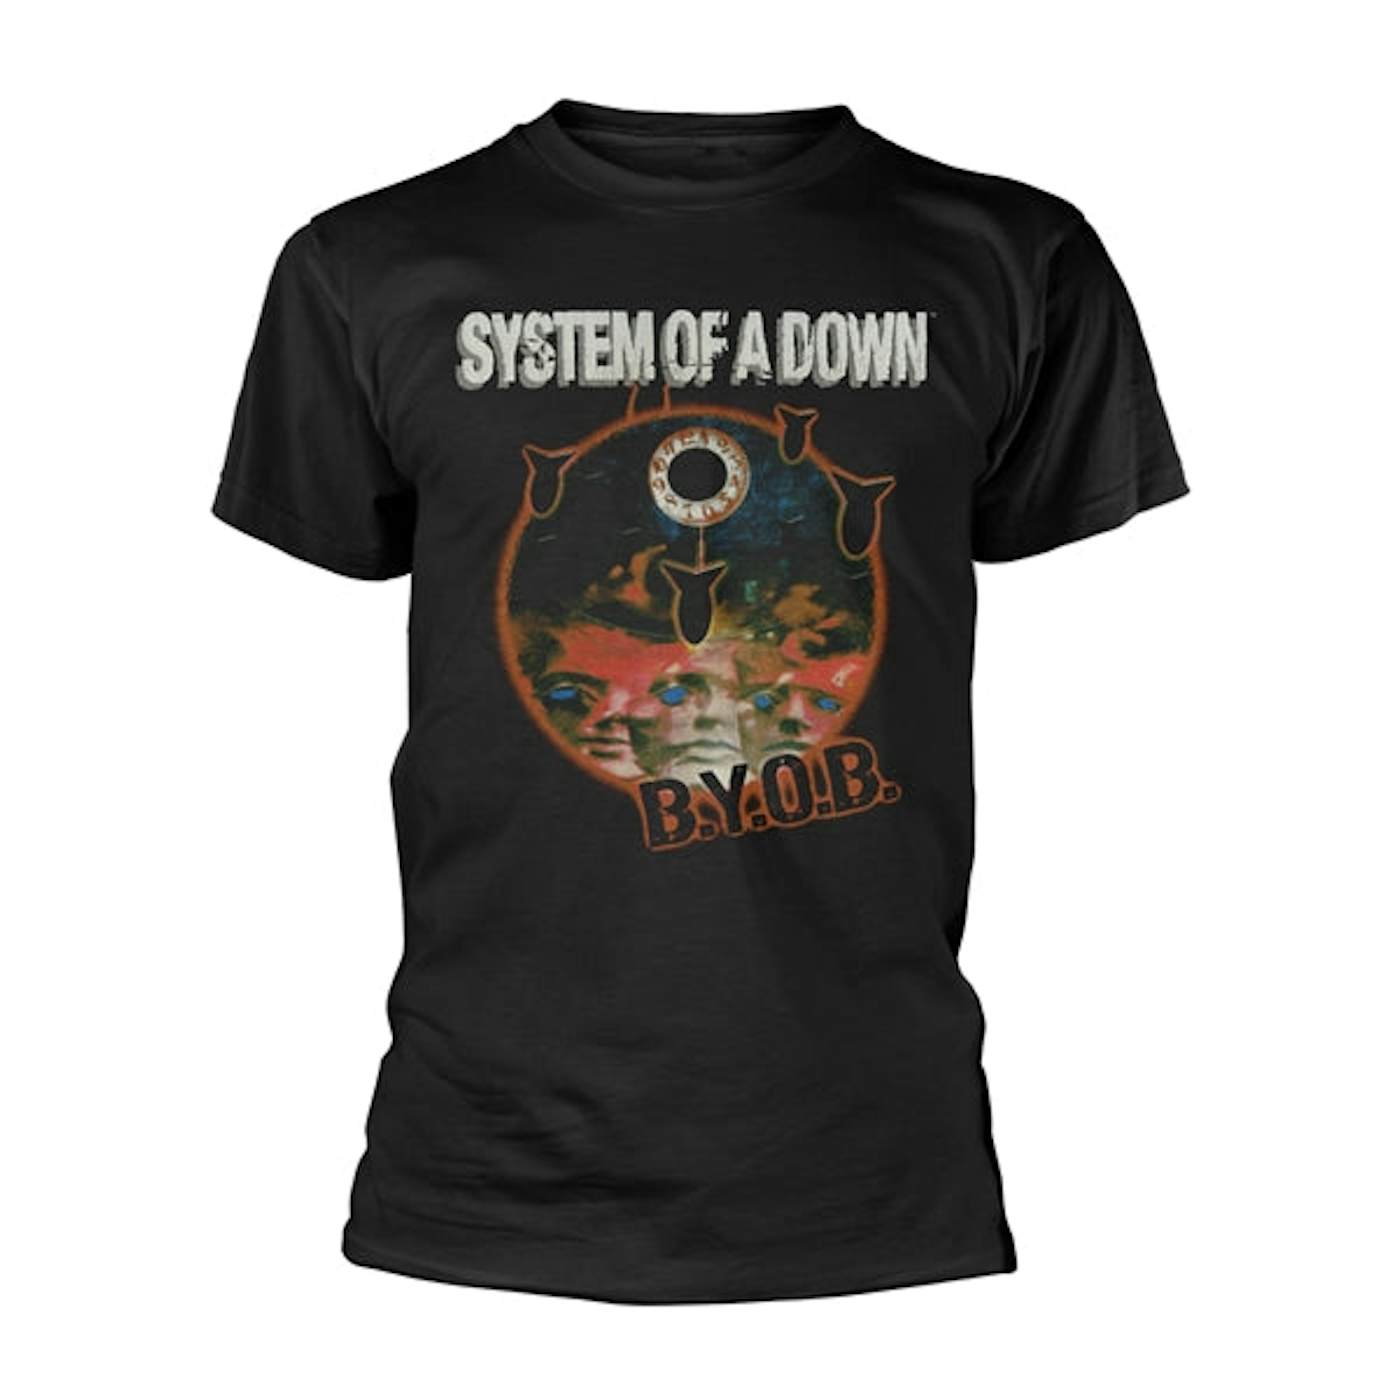 System Of A Down T Shirt - B.Y.O.B.